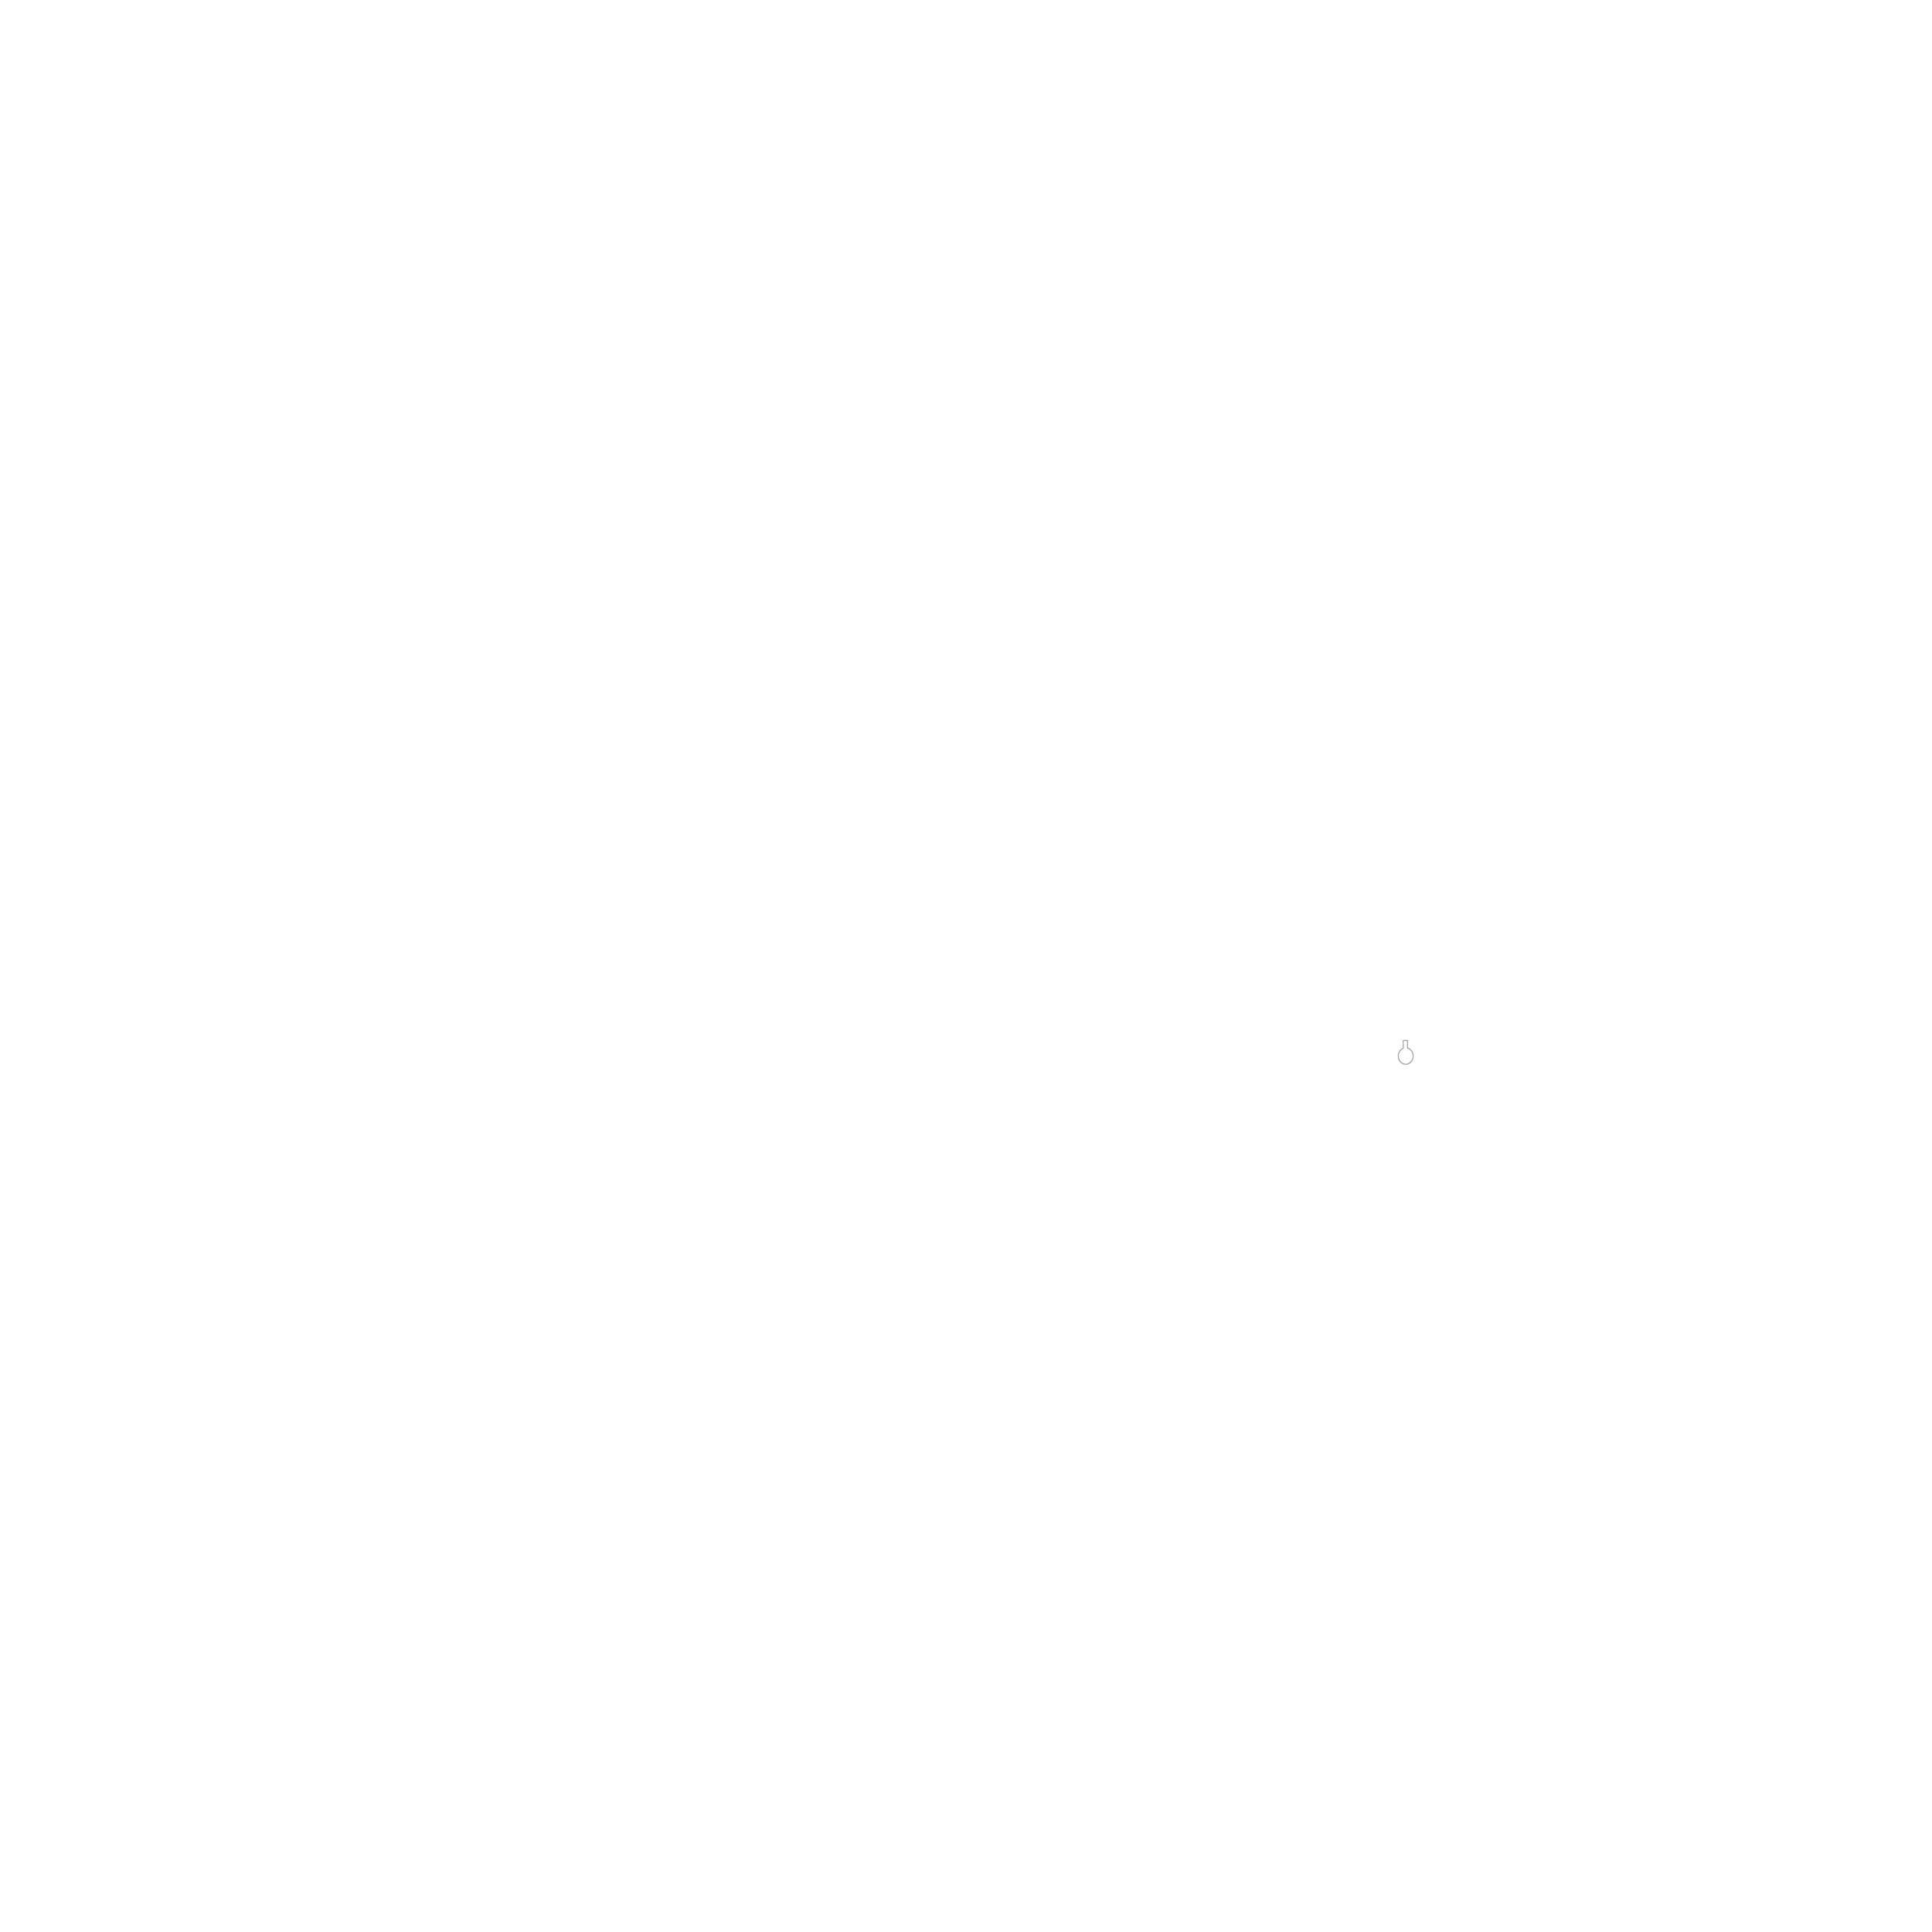 Carteret Catch